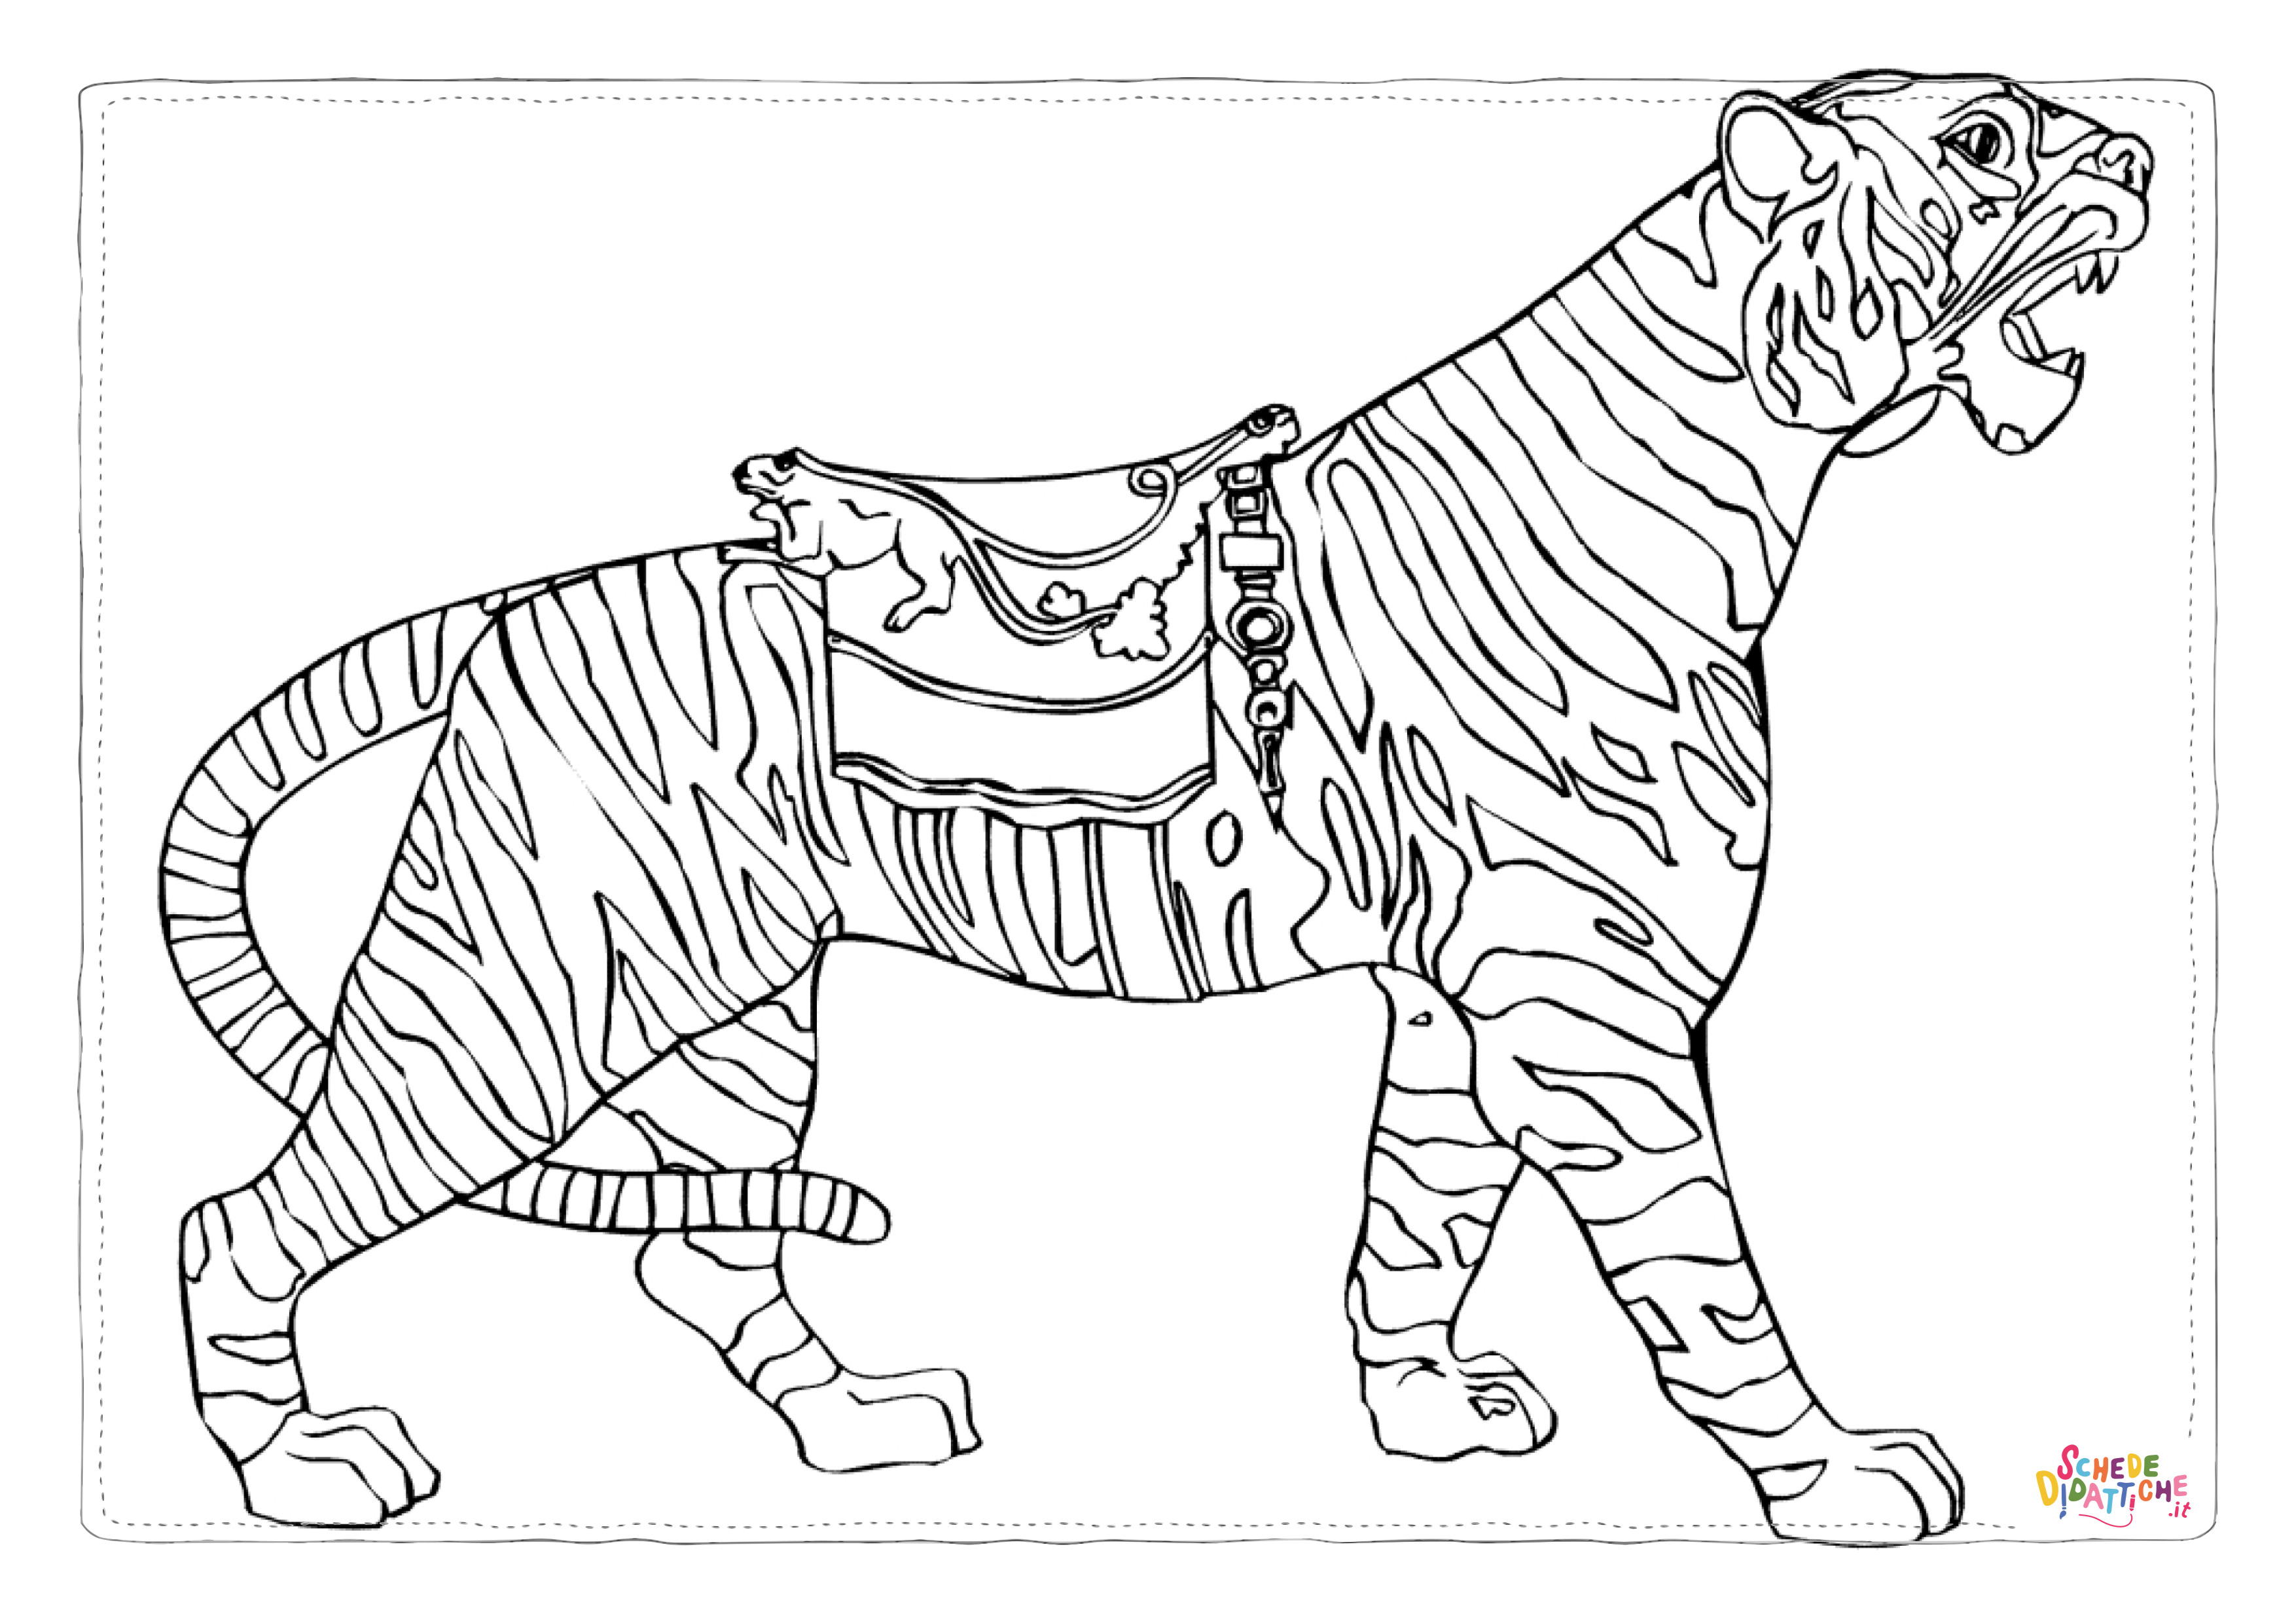 Disegno di tigre da stampare e colorare 10